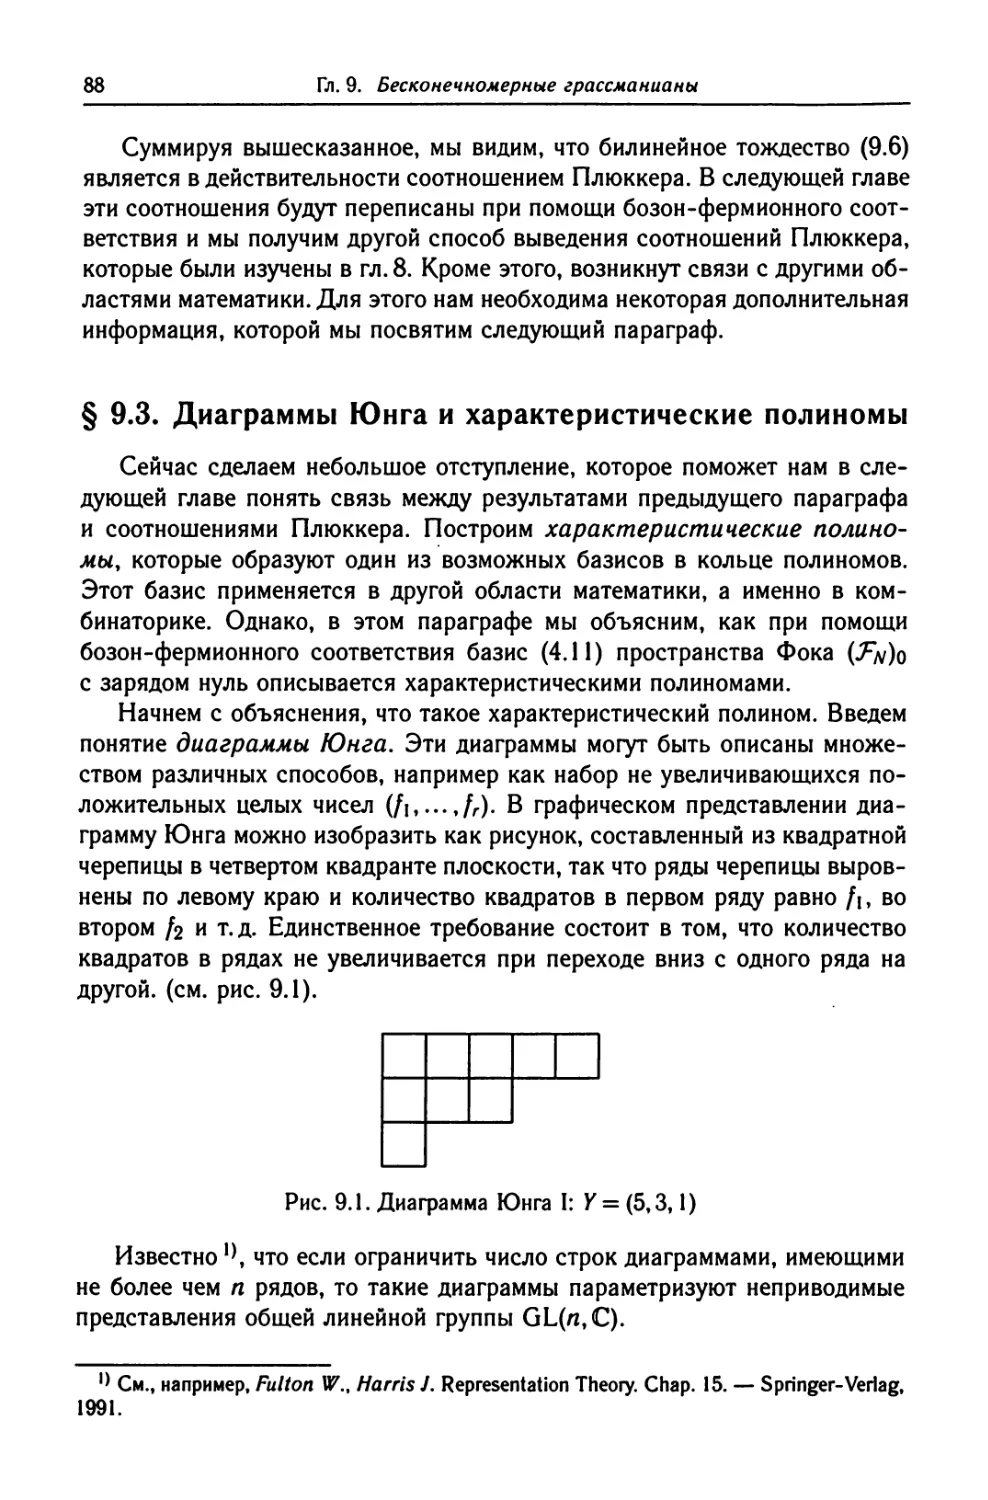 § 9.3. Диаграммы Юнга и характеристические полиномы